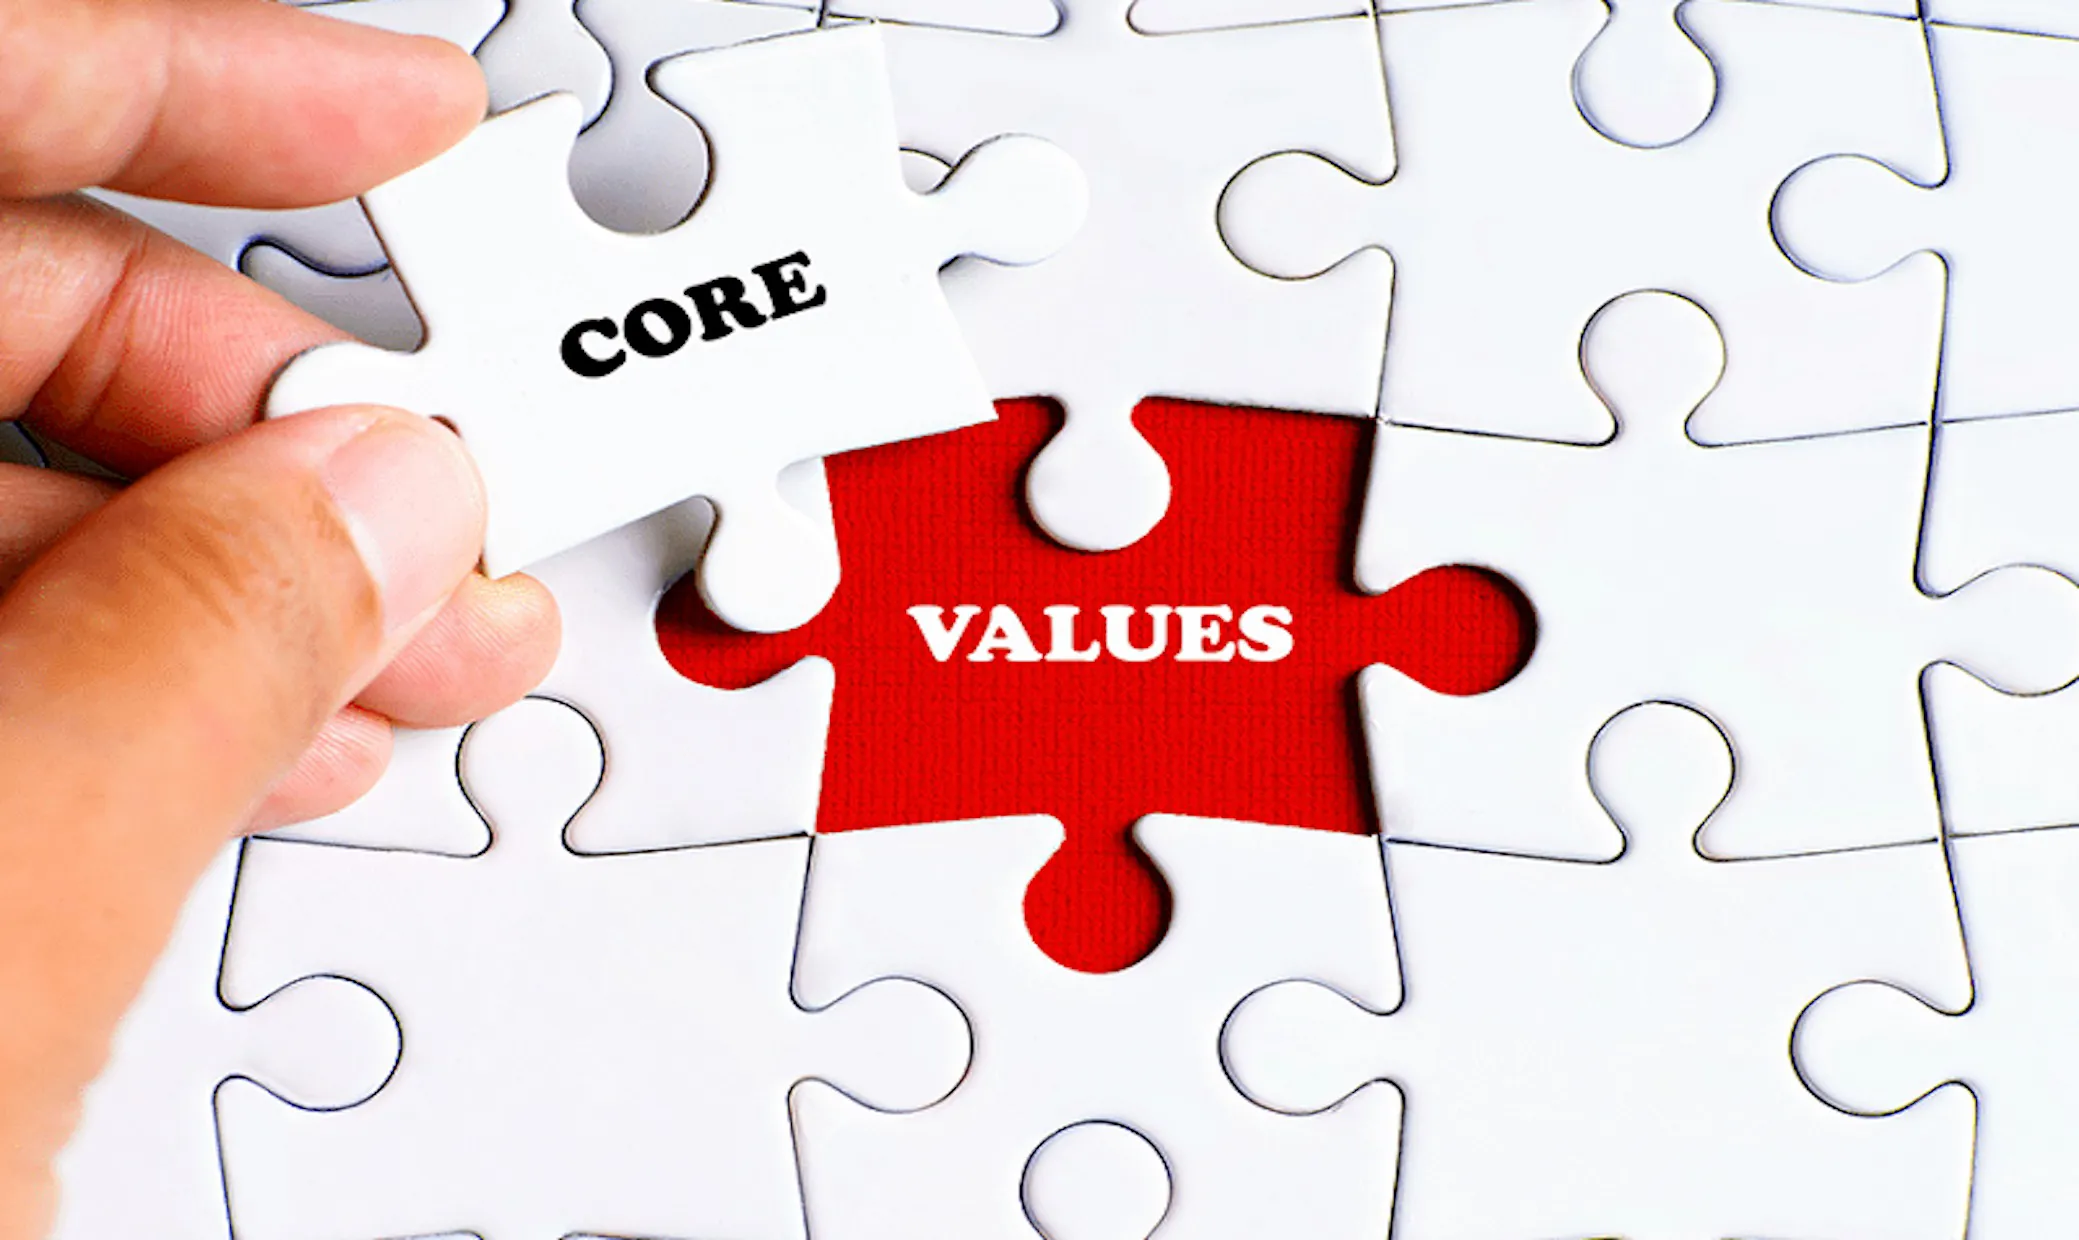 Giá trị cốt lõi của doanh nghiệp là gì? Top các giá trị cốt lõi mà doanh nghiệp cần có